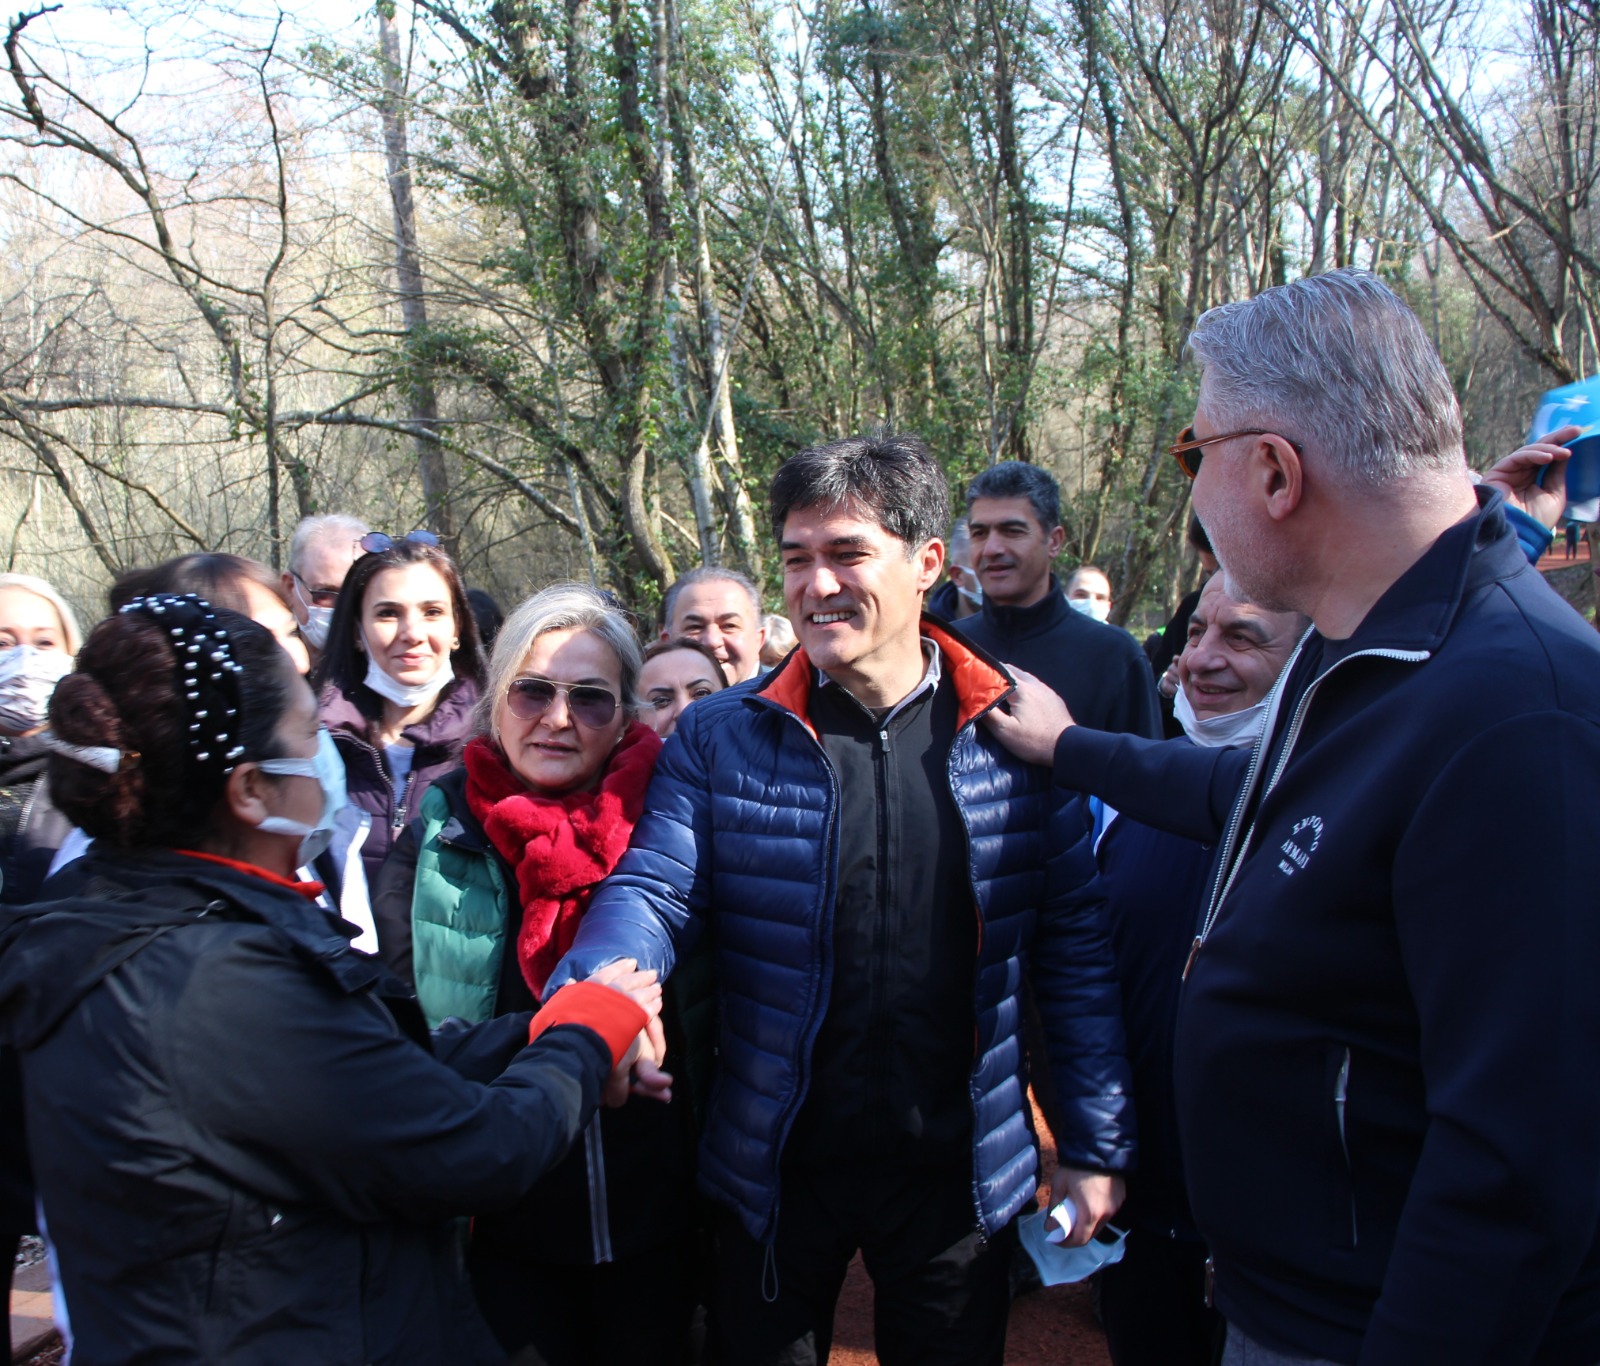 “İYİ Parti İstanbul İl Başkanlığı, Belgrad Ormanı’nda, Orman Haftası kapsamında yürüyüş etkinliği düzenledi!”